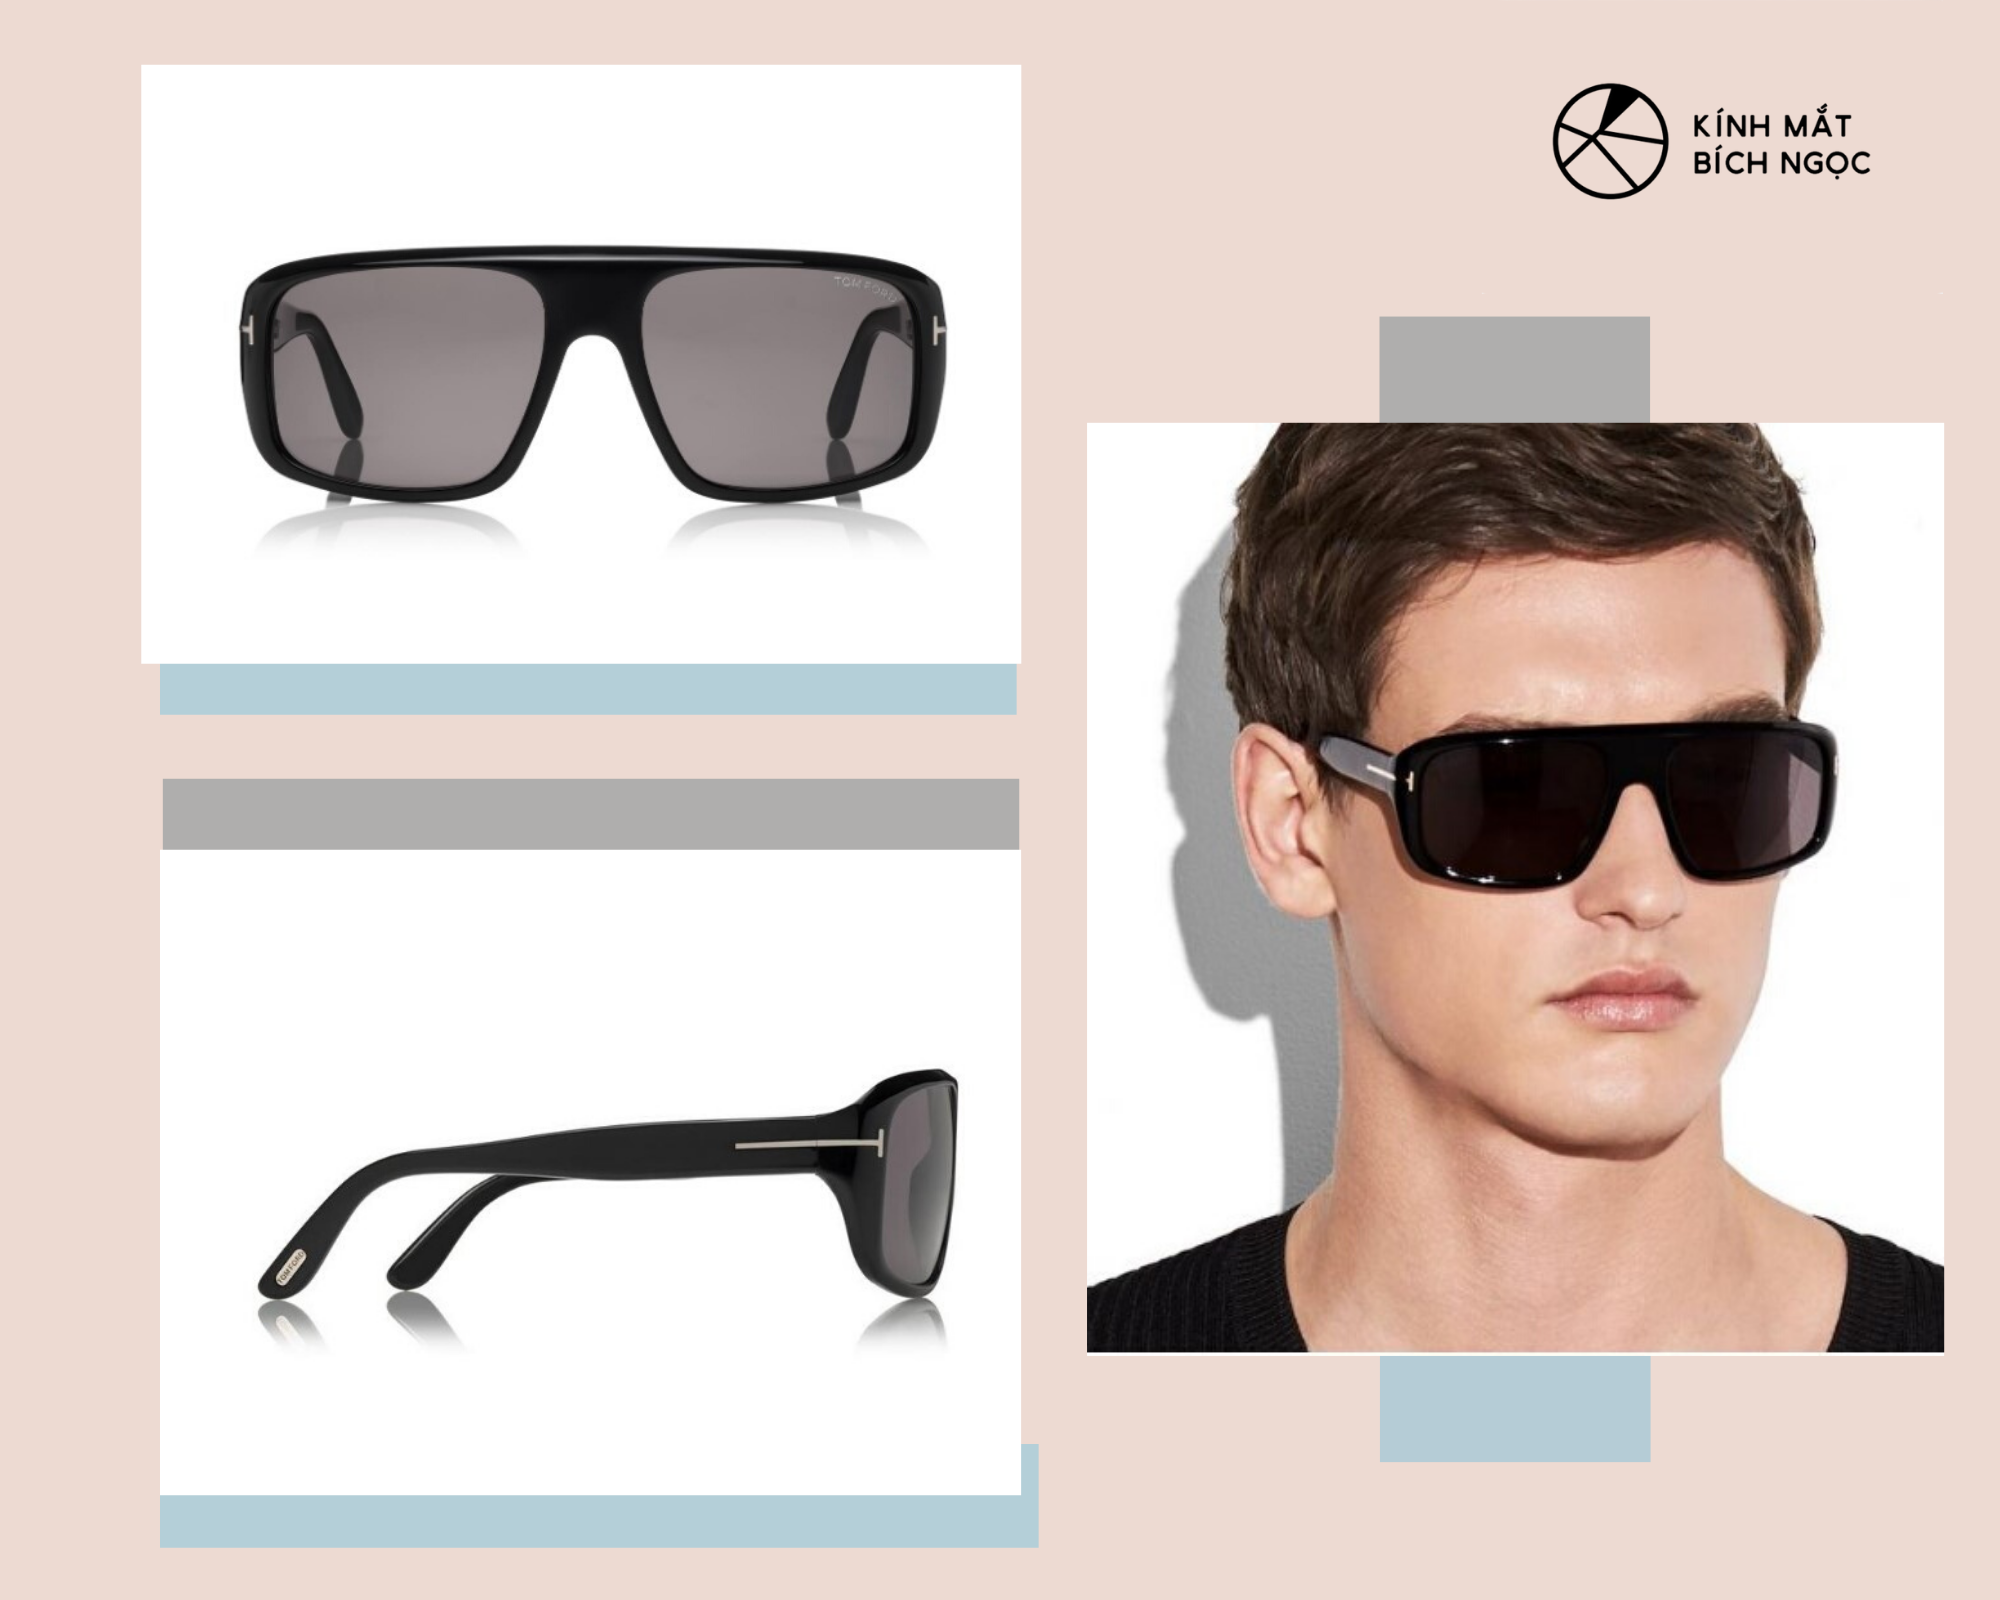 Thiết kế mẫu kính Tom Ford nam Duke Sunglasses có giá 405$